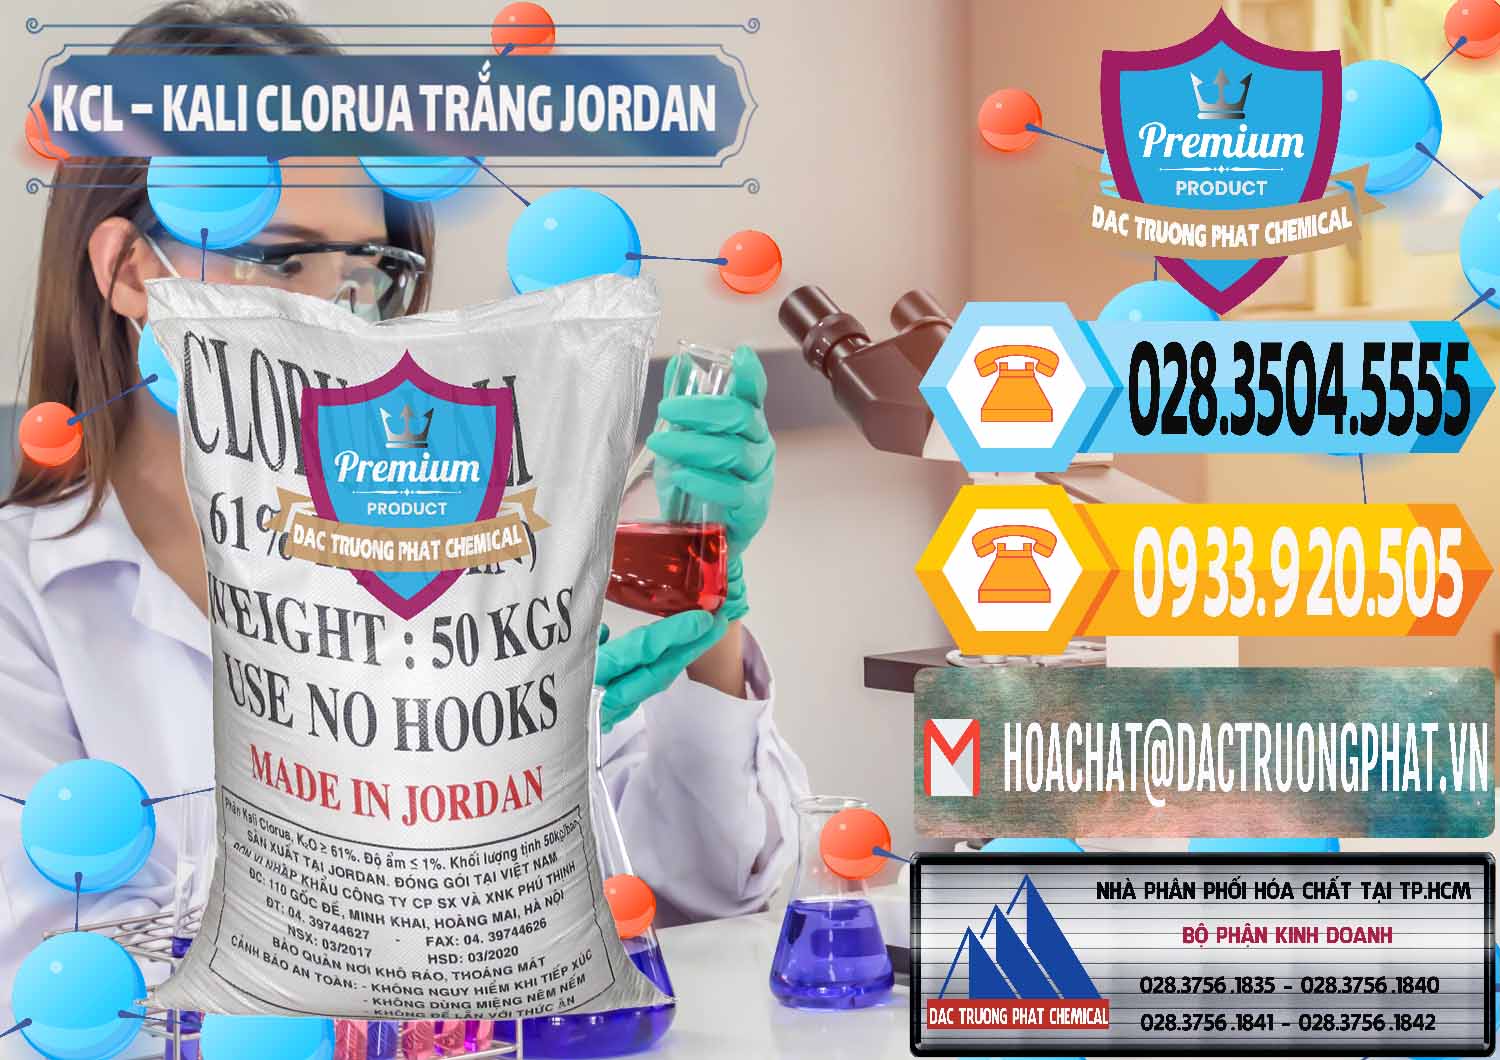 Nơi chuyên cung cấp và bán KCL – Kali Clorua Trắng Jordan - 0088 - Đơn vị chuyên cung cấp và nhập khẩu hóa chất tại TP.HCM - hoachattayrua.net